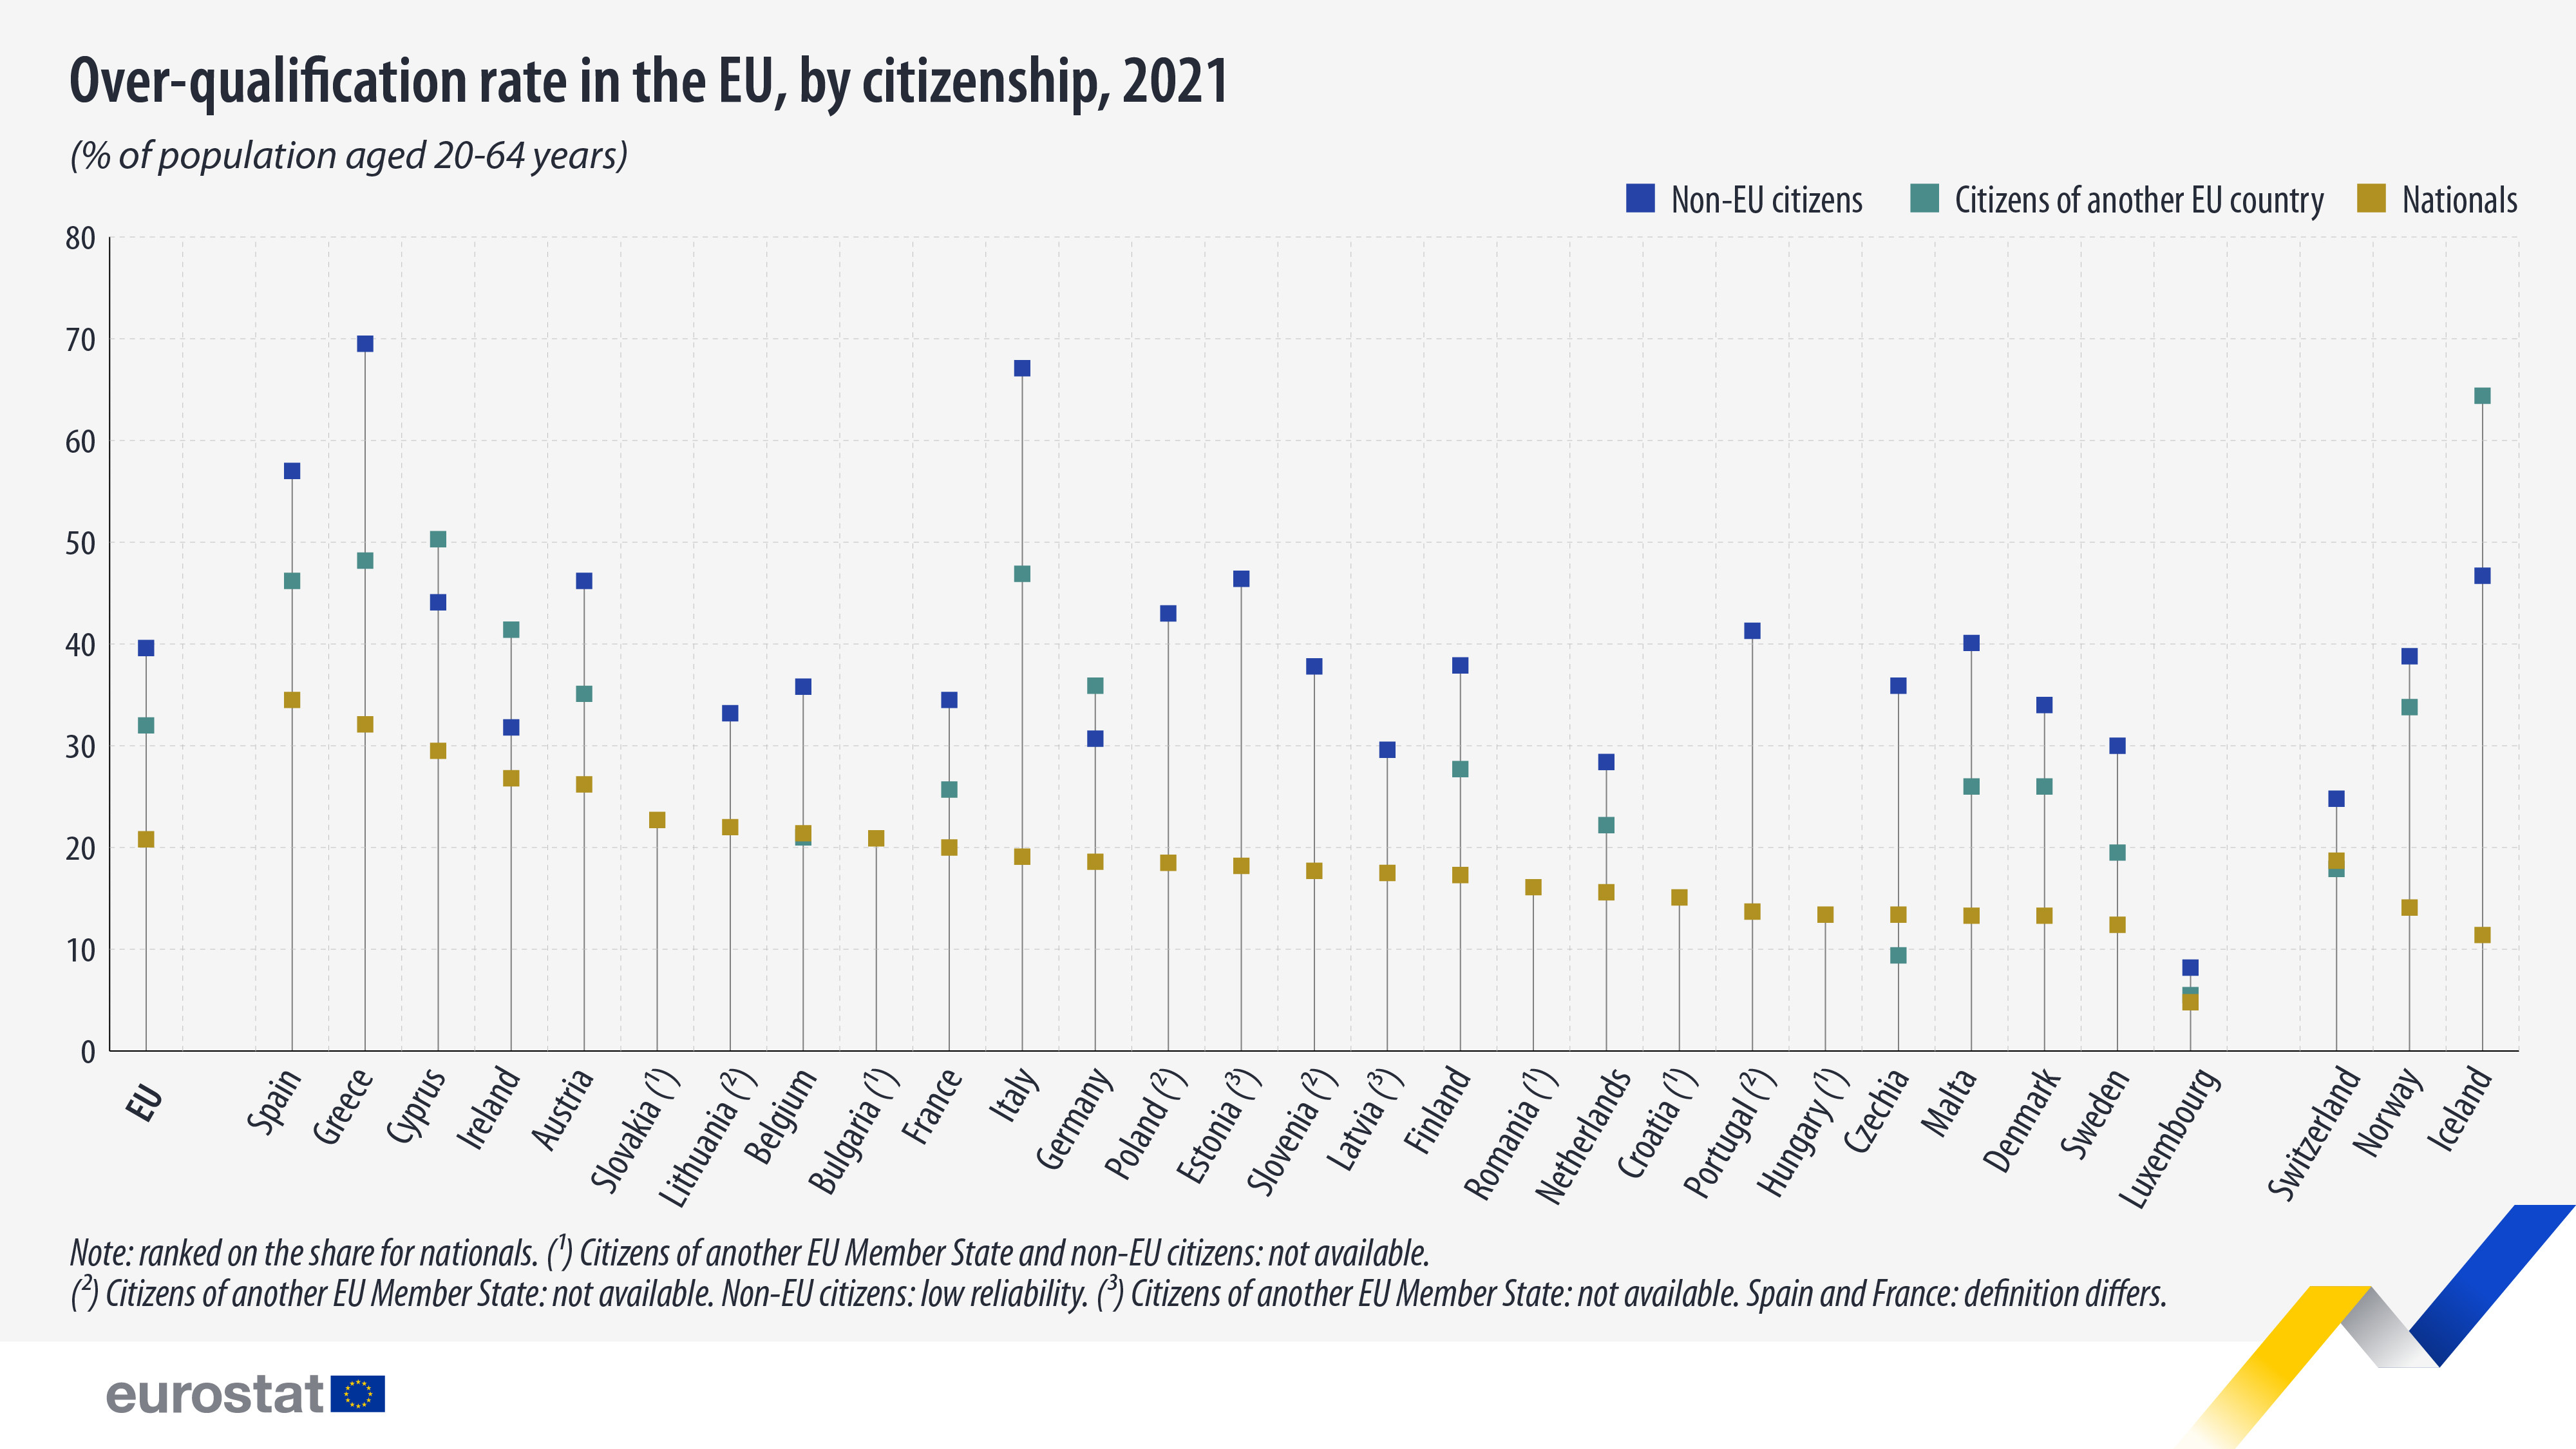 Уровень сверхквалификации в ЕС в разбивке по гражданству